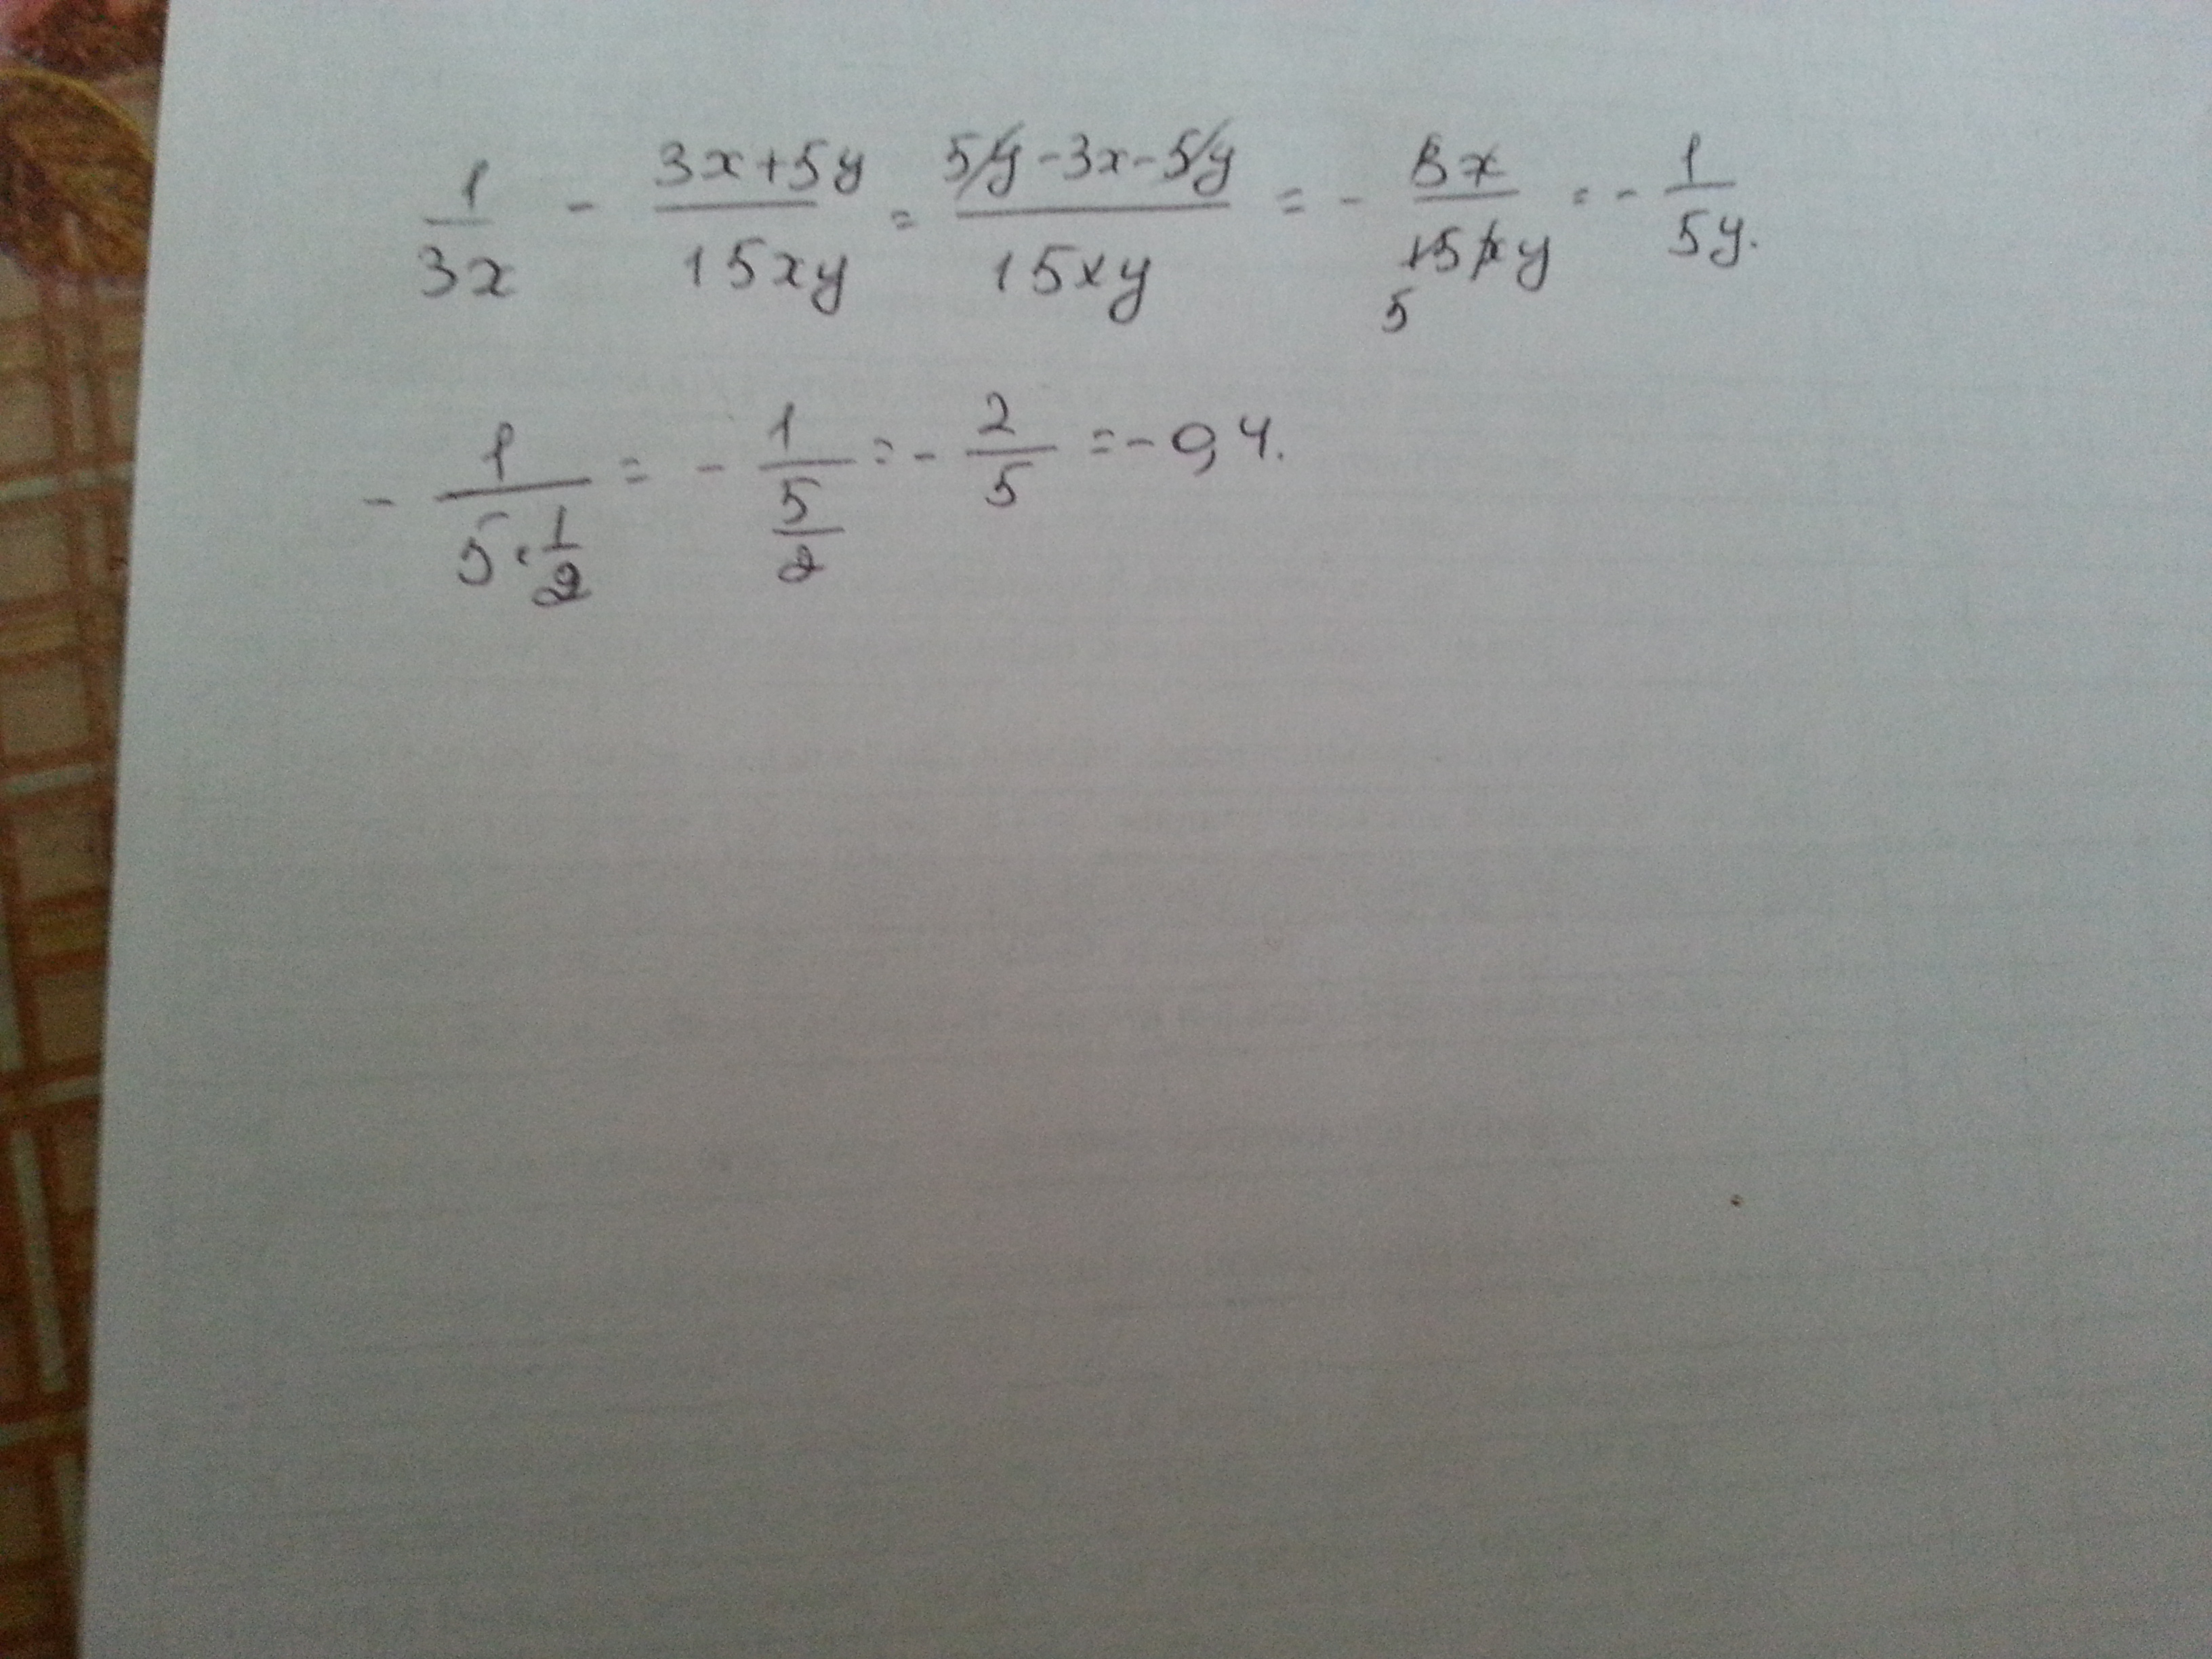 5x y 15 0. 1/3x-3x+5y/15xy при x корень из 45 y 1/2. Найдите значение выражения | минус 4| плюс |1 минус 3x| при x=2,4.. 1/3x 3x+5y/15xy. 1 3 5 3 15x y x XY + − при x = 45 , 12 y = ..